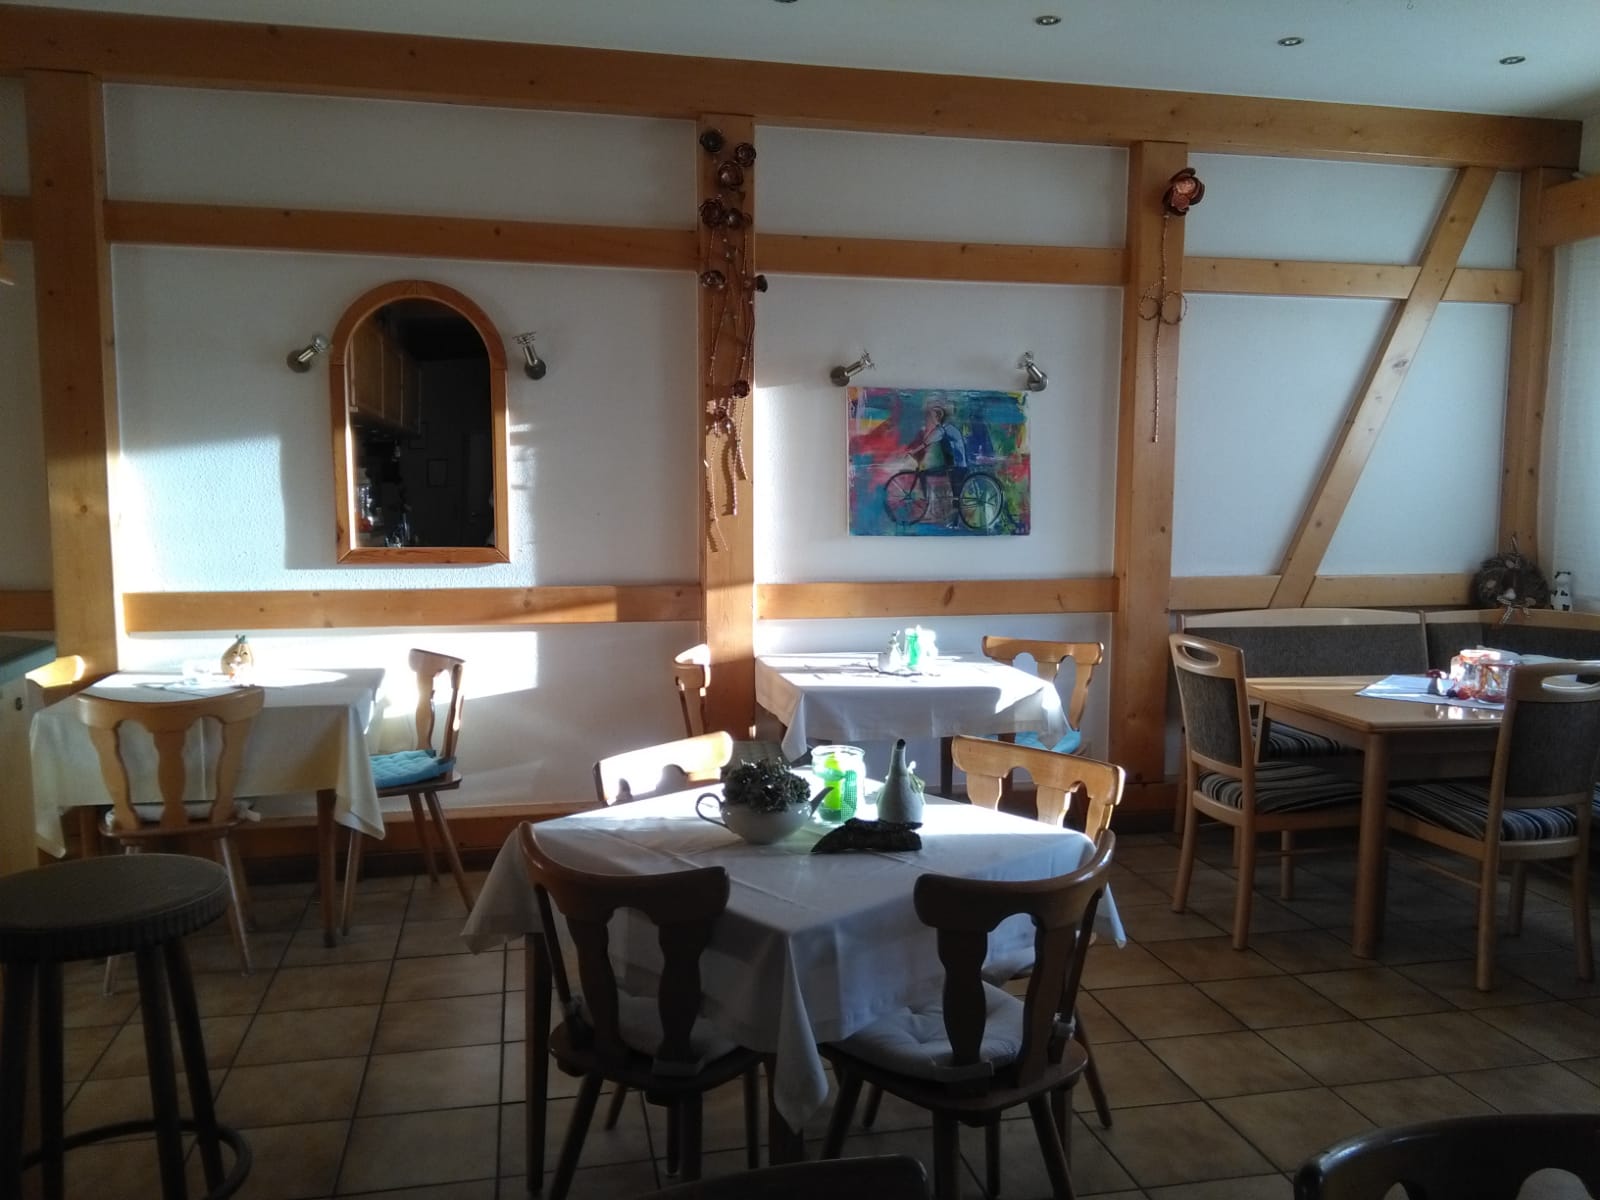 Gaststättenräum mit 3 Tischen, Holzstühlen und 1 Eckback. Eingedeckt mit Tischdecken und Deko auf dem Tisch. Gasthaus Sonntag in Bonndorf